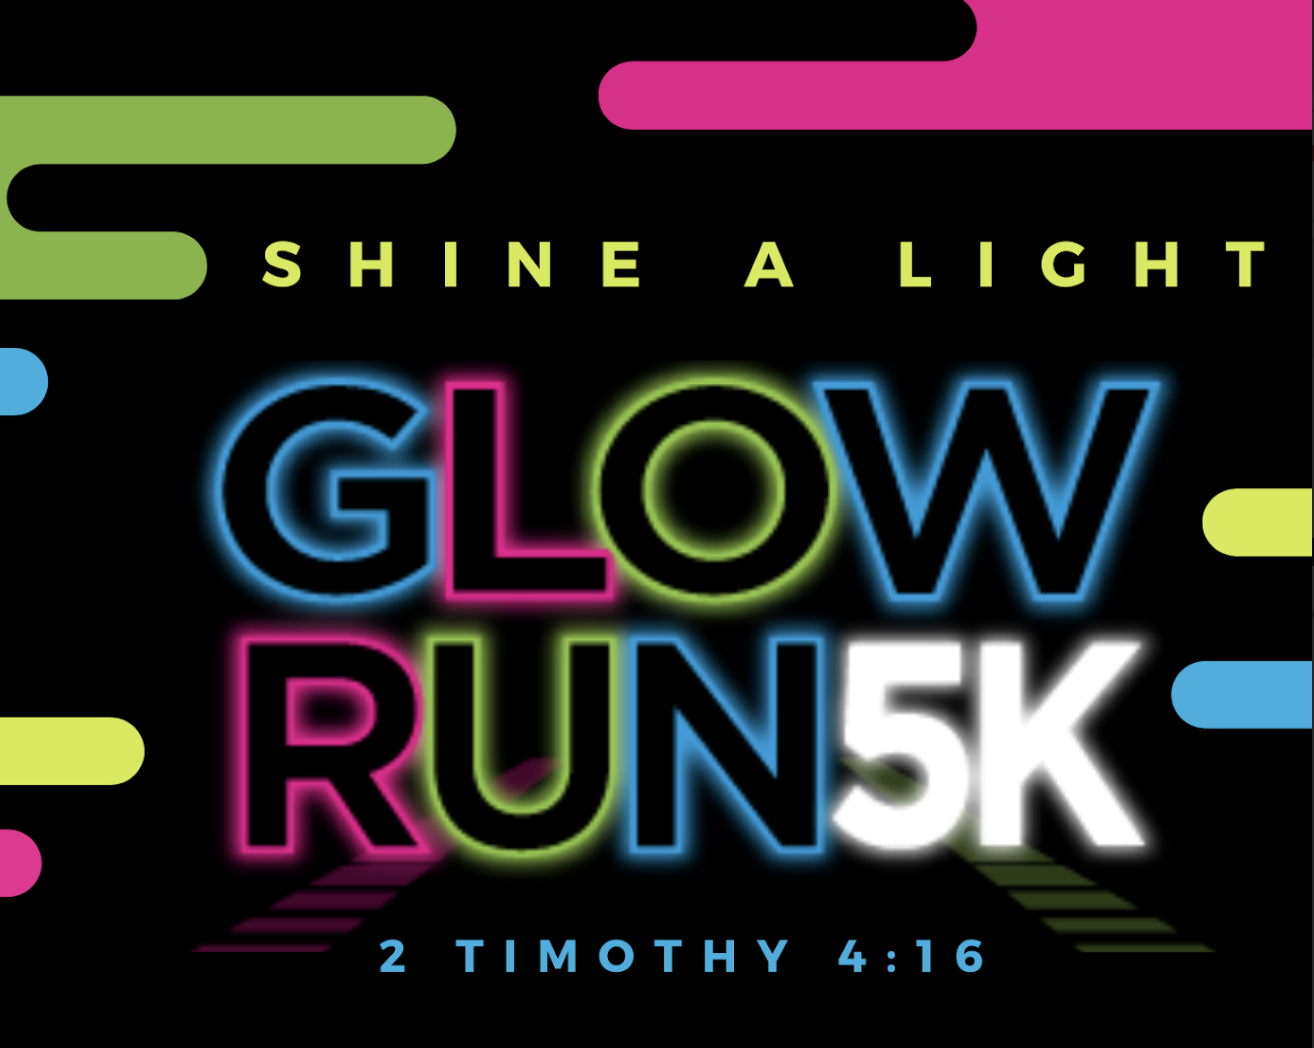 Shine a Light 5K Glow Run